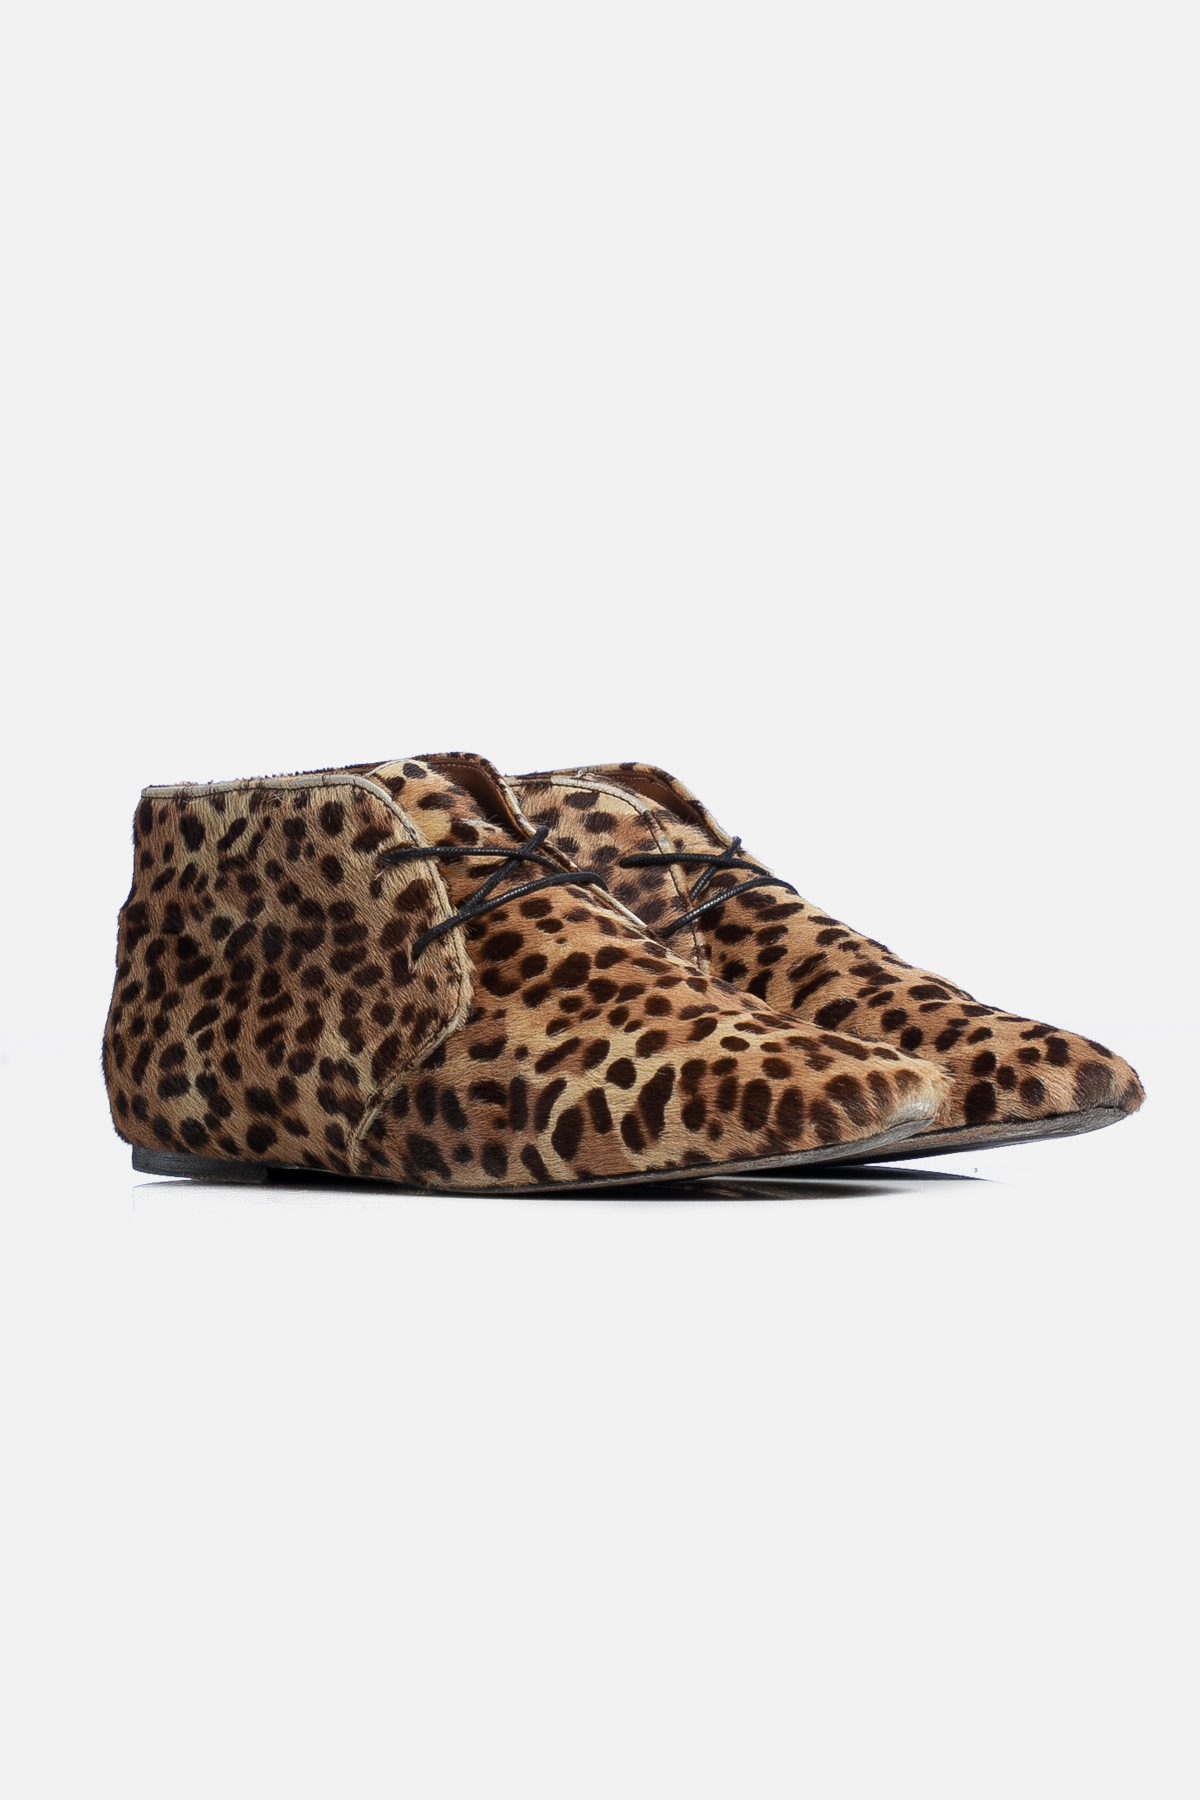 Ponyhair Leopard Print Lace-Up Boots